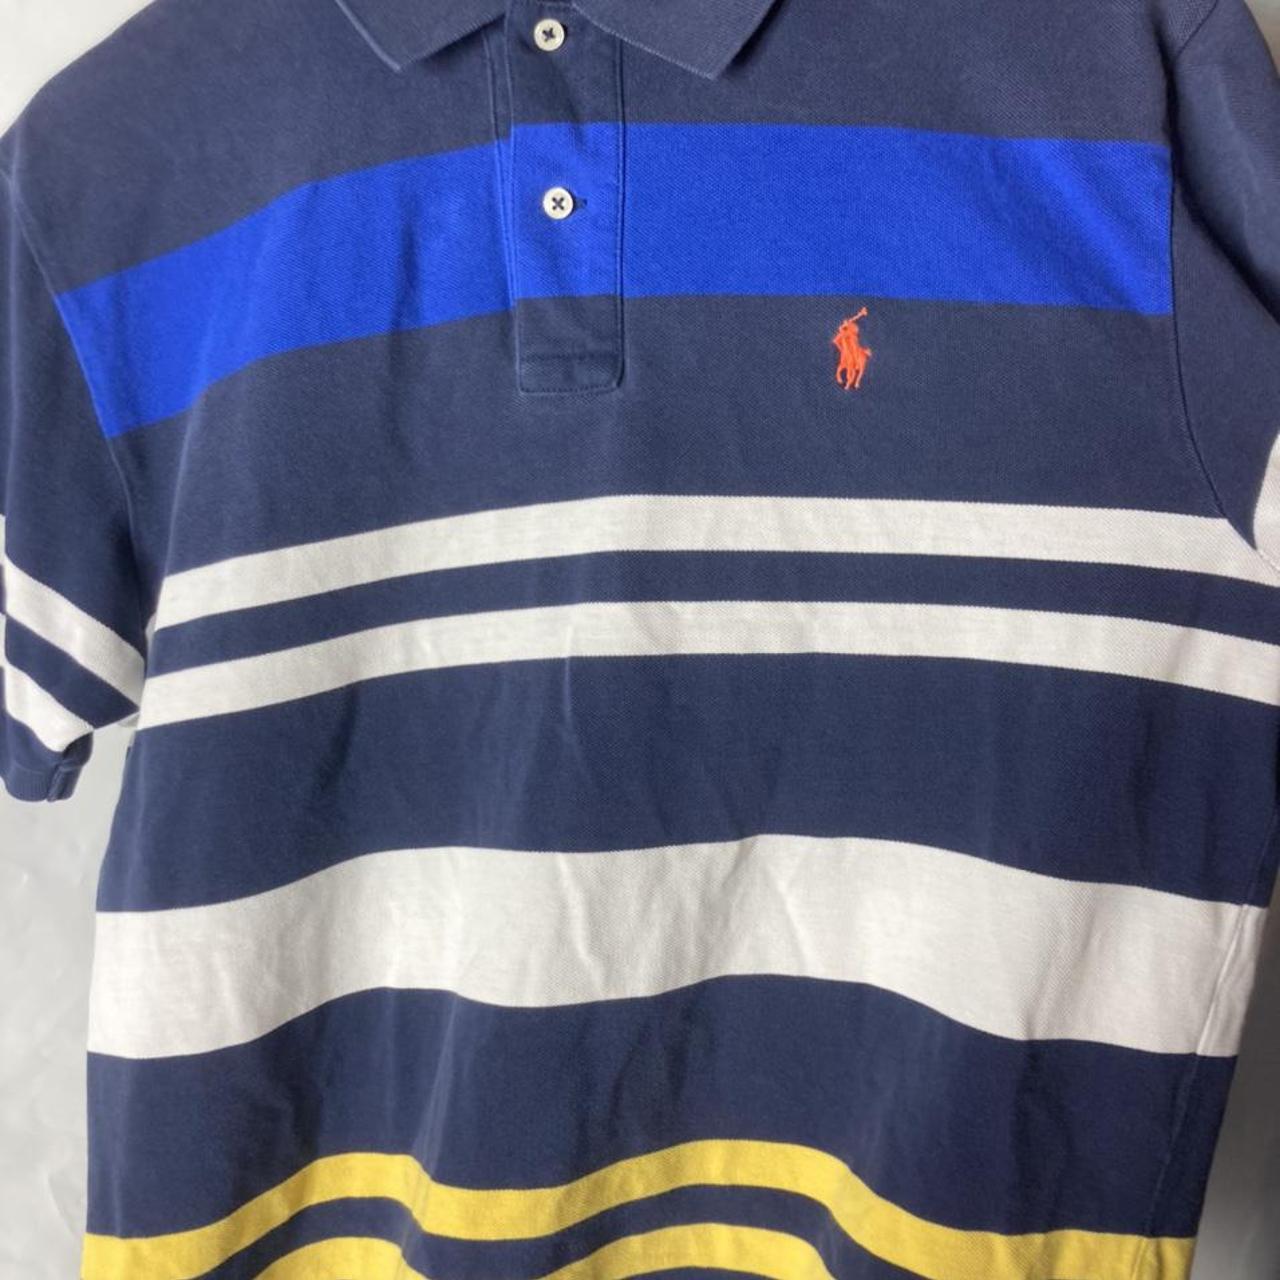 Polo Ralph Lauren button up shirt mens large striped... - Depop